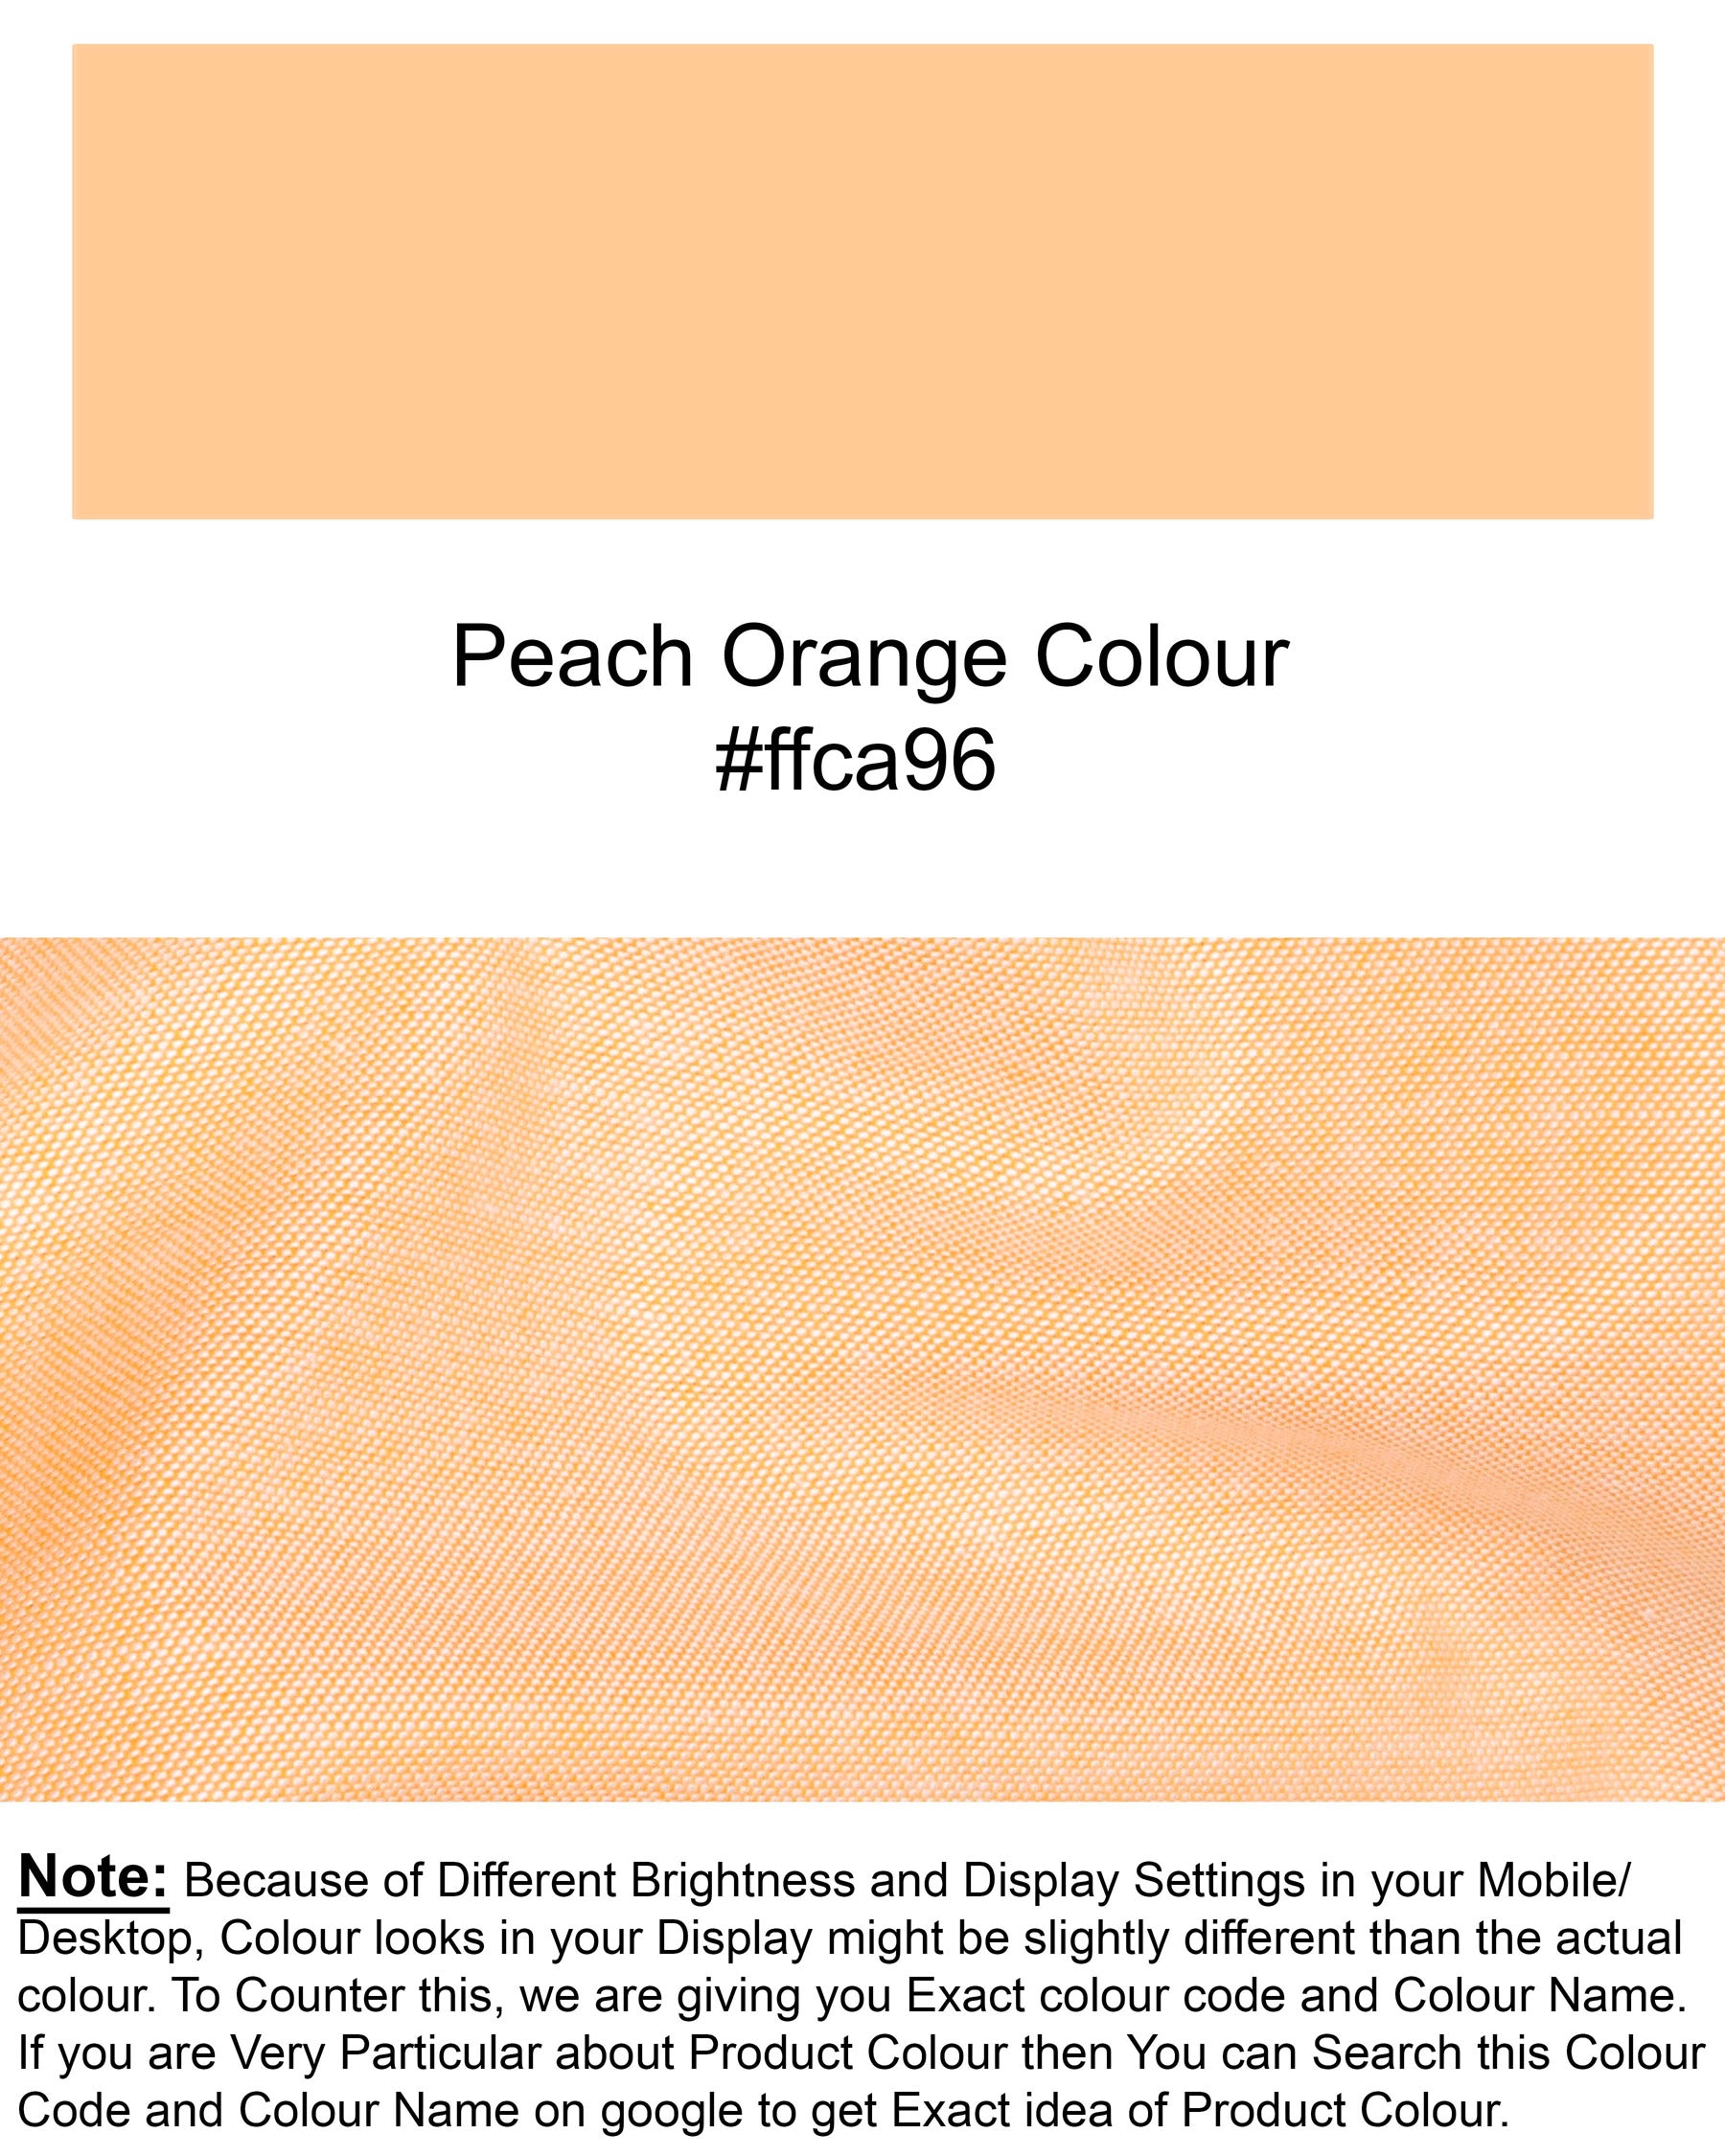 Peach Orange Royal Oxford Shirt 5951-BD-BLK-38, 5951-BD-BLK-H-38, 5951-BD-BLK-39, 5951-BD-BLK-H-39, 5951-BD-BLK-40, 5951-BD-BLK-H-40, 5951-BD-BLK-42, 5951-BD-BLK-H-42, 5951-BD-BLK-44, 5951-BD-BLK-H-44, 5951-BD-BLK-46, 5951-BD-BLK-H-46, 5951-BD-BLK-48, 5951-BD-BLK-H-48, 5951-BD-BLK-50, 5951-BD-BLK-H-50, 5951-BD-BLK-52, 5951-BD-BLK-H-52